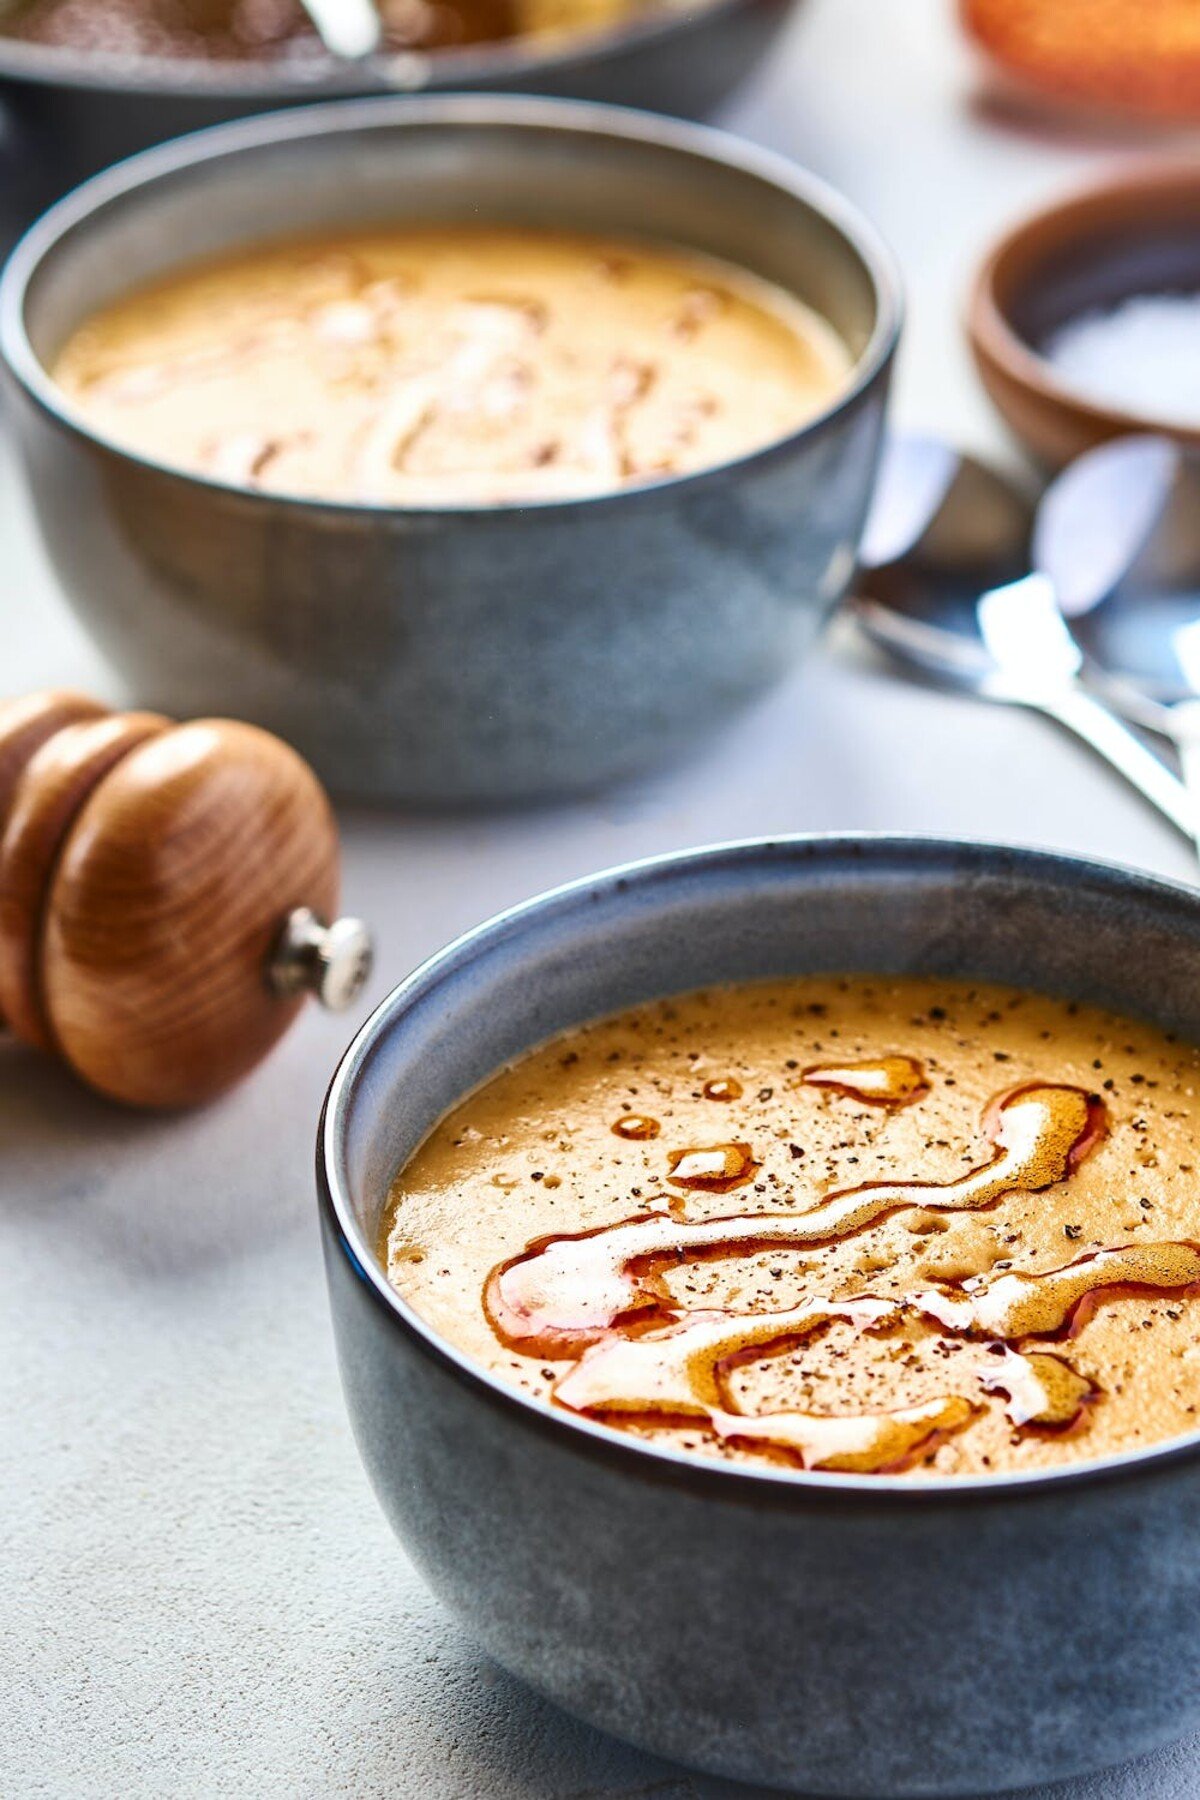 Mercimek çorbası, čočková polévka